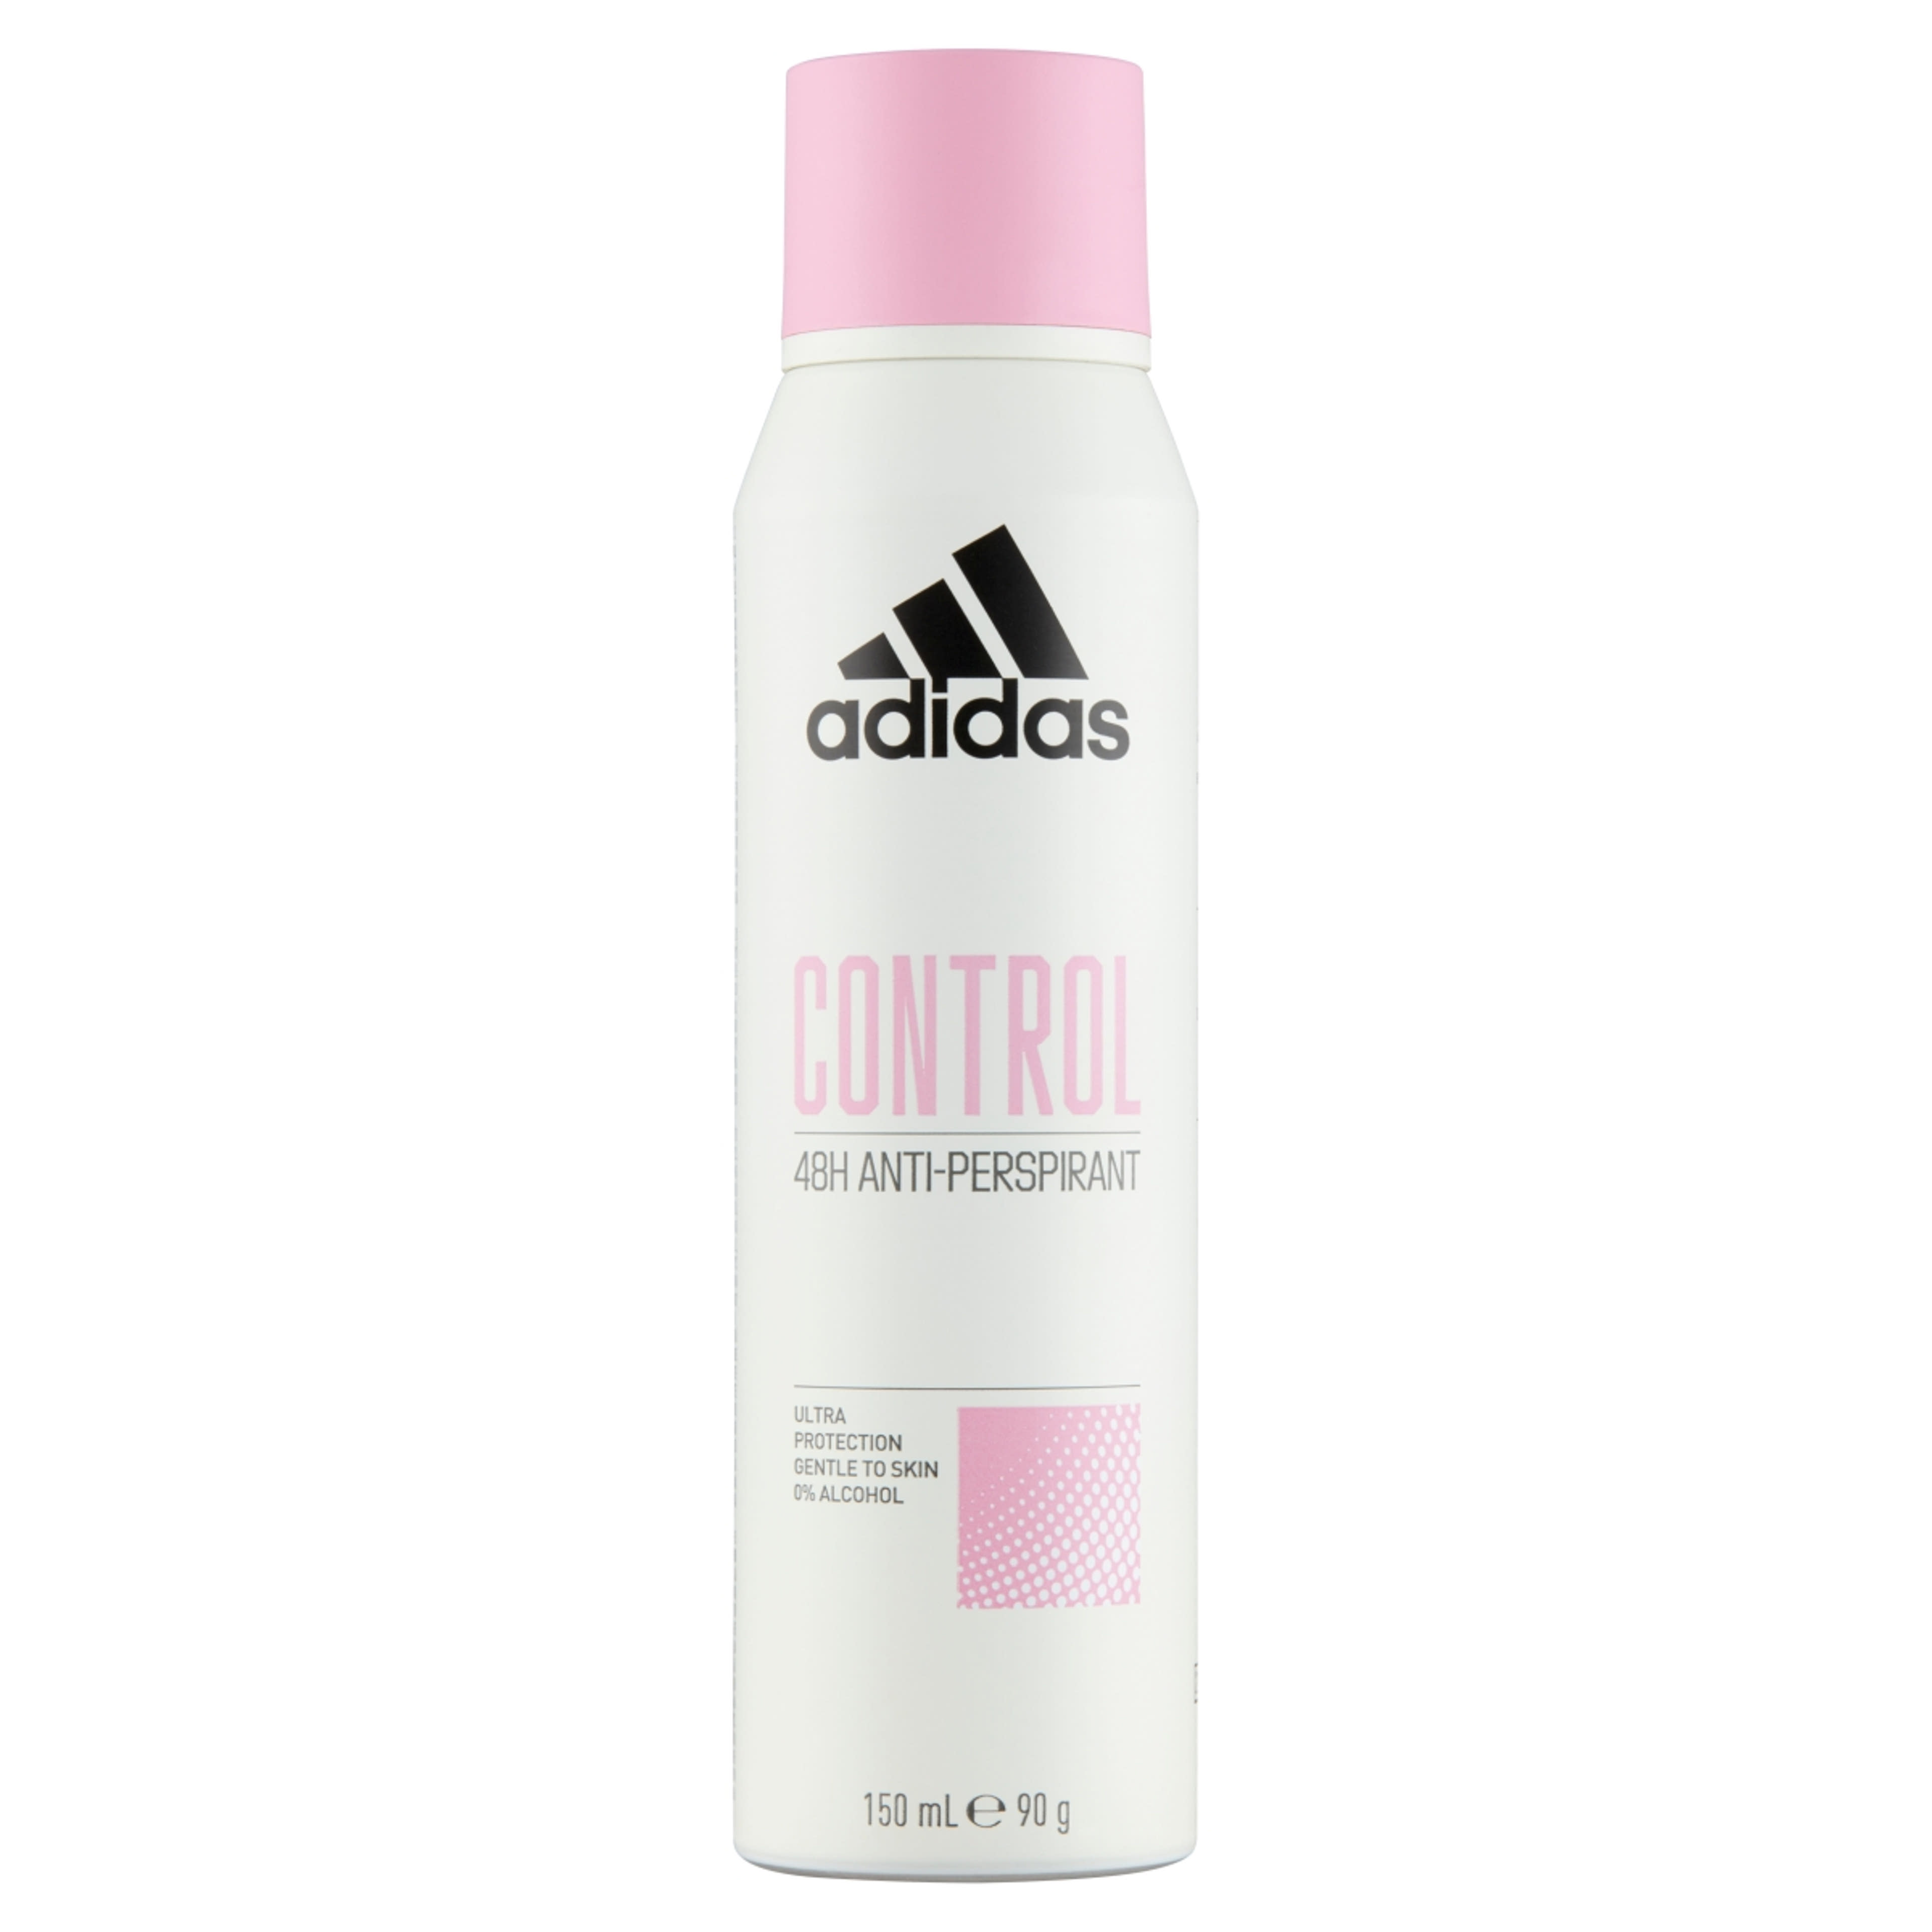 Adidas Control női izzadásgátló dezodor - 150 ml